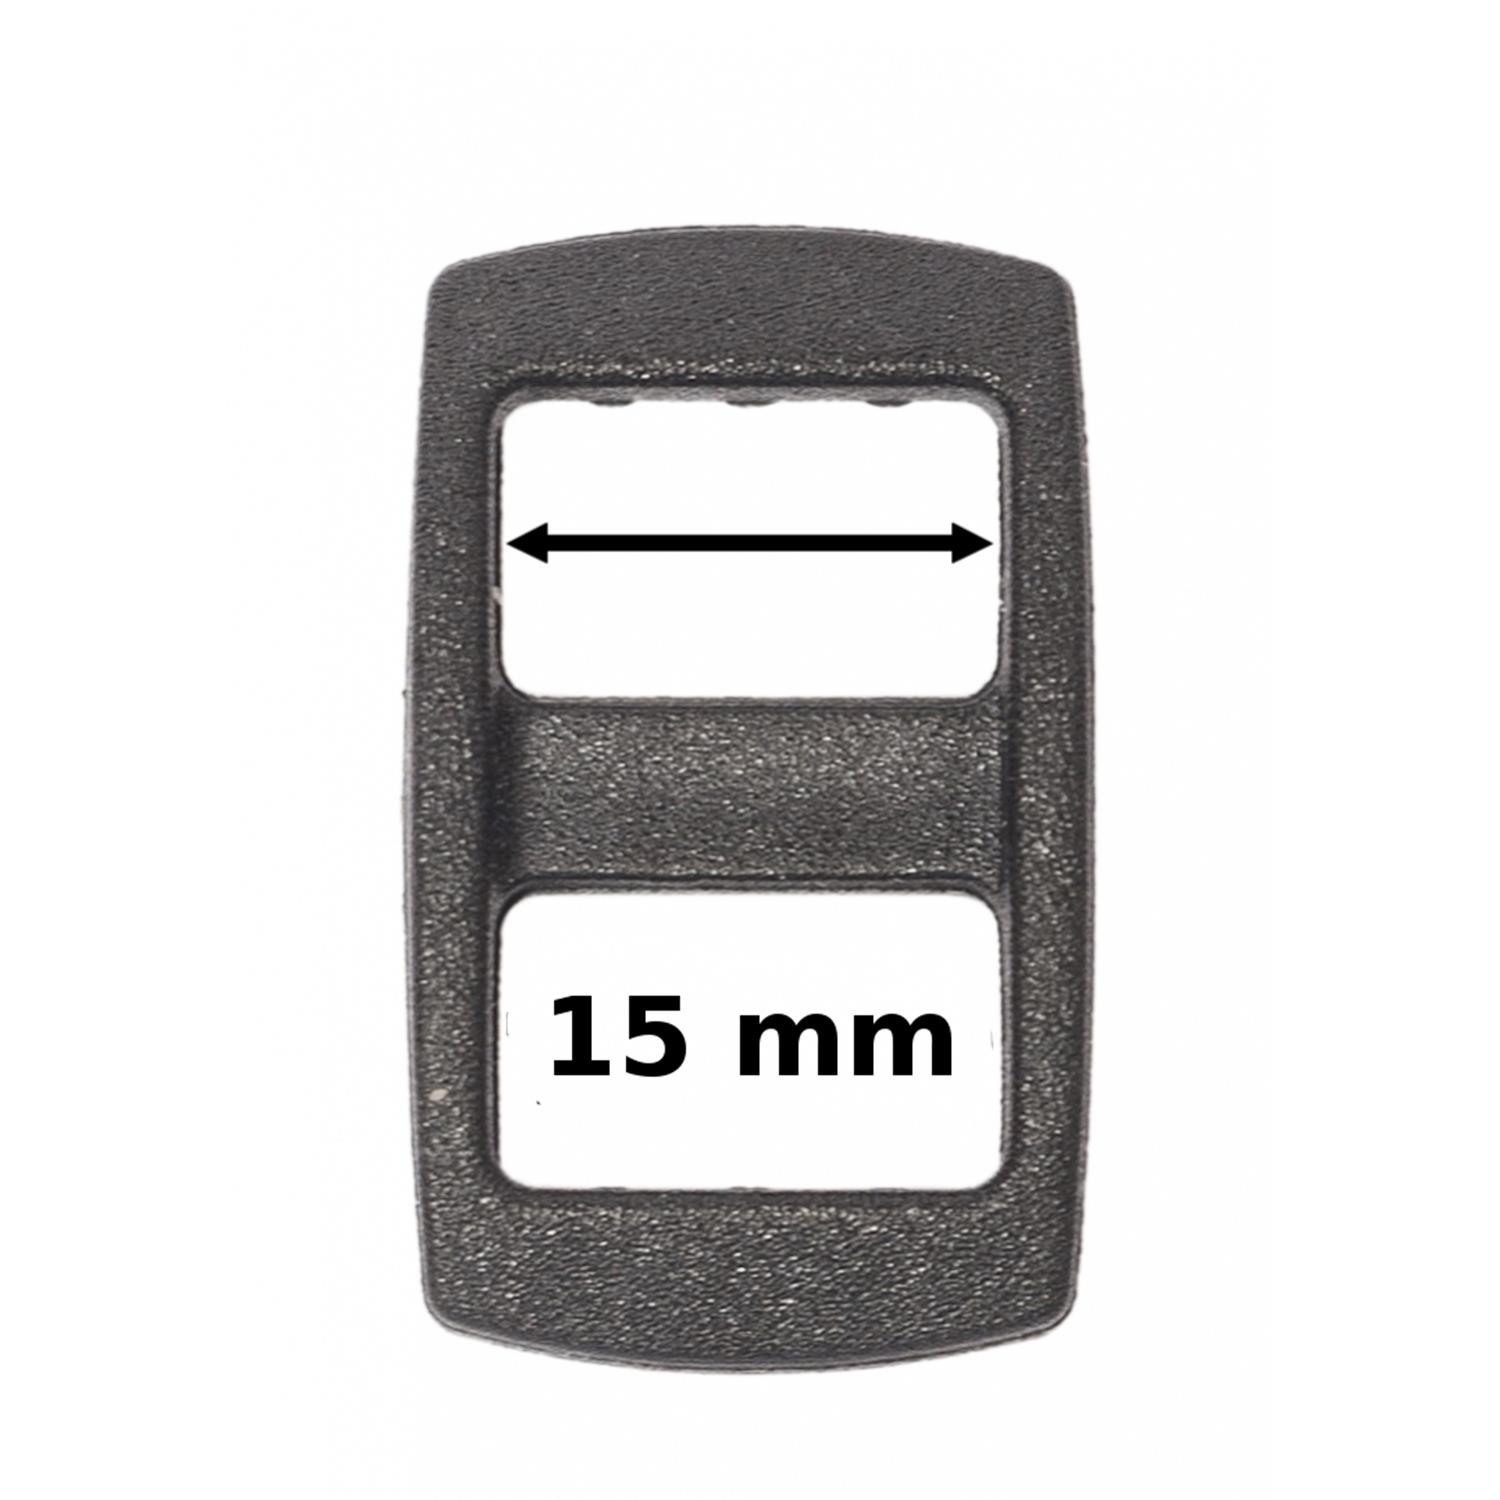 1 Stk. Regulator für Gurtband 15 mm breit, schwarz